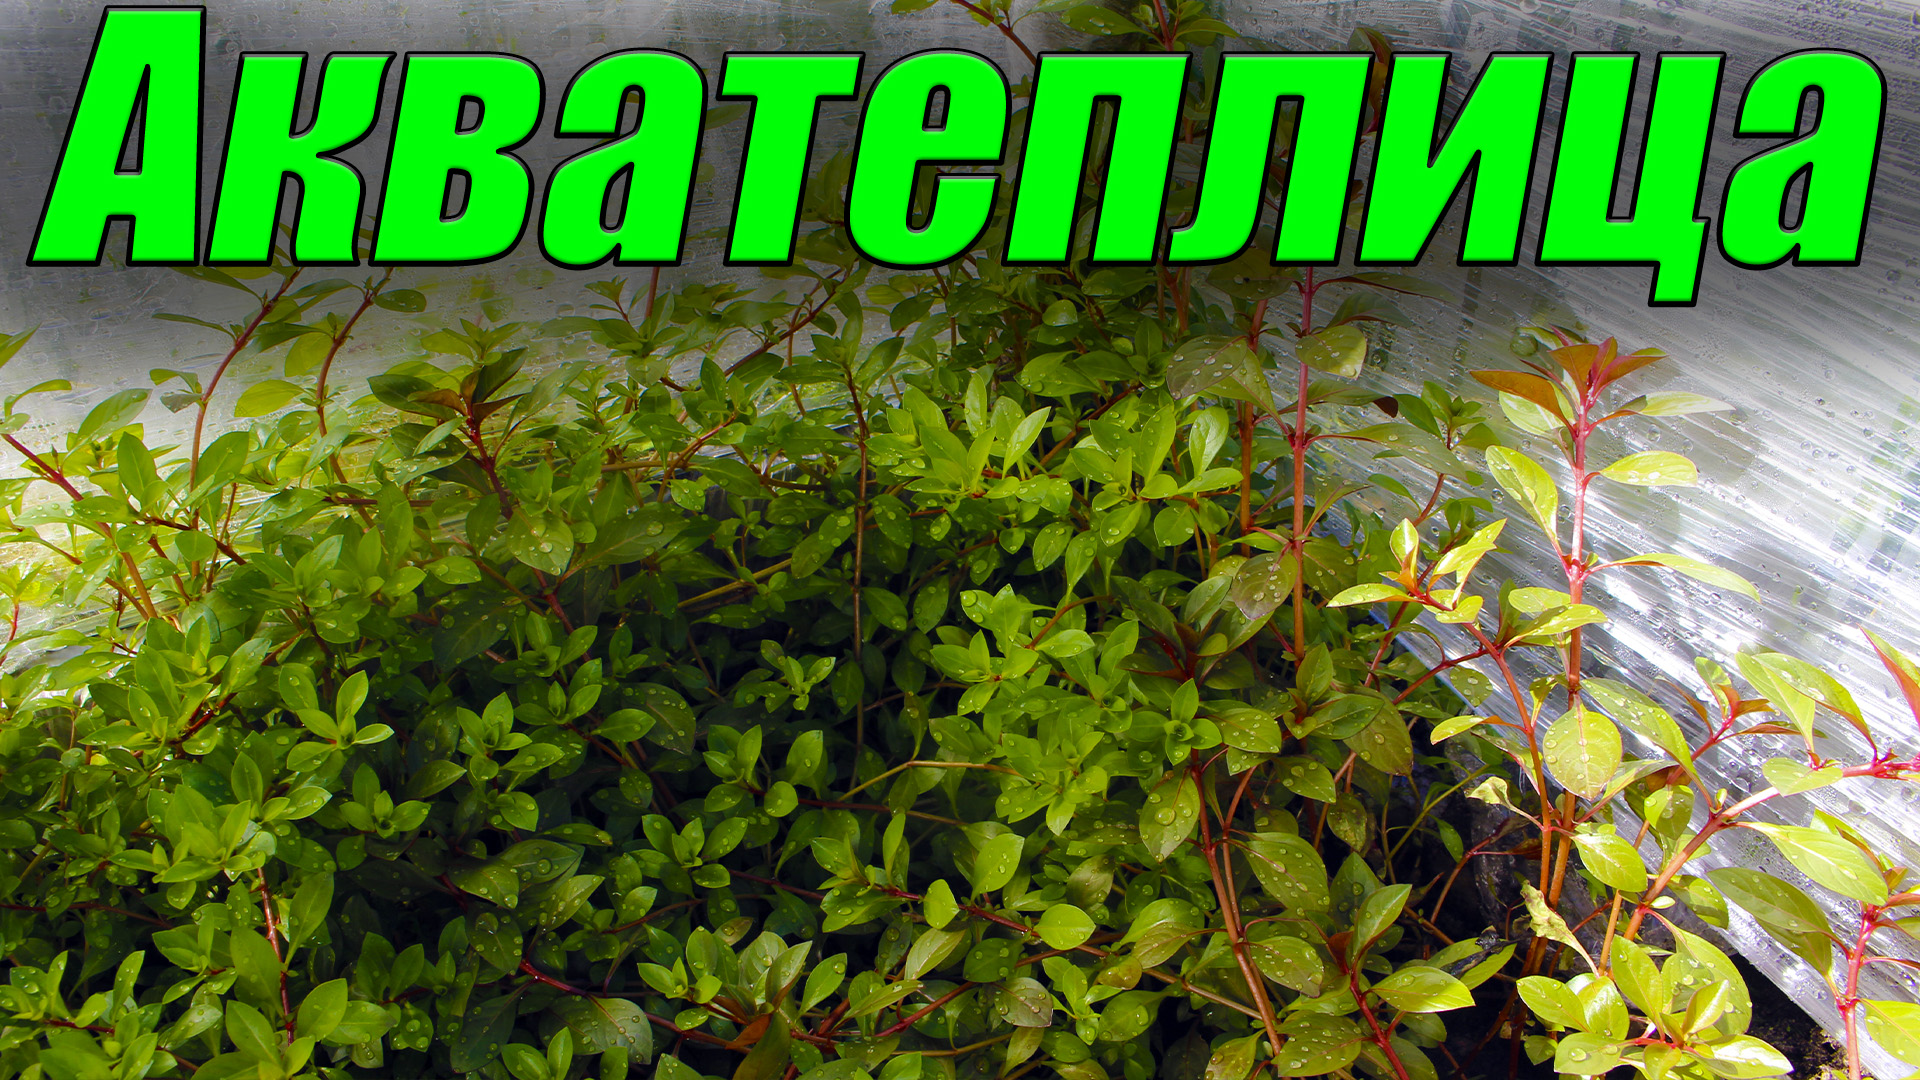 Мини-Акватеплички на подоконнике! Самый лучший способ выращивания аквариумных растений!